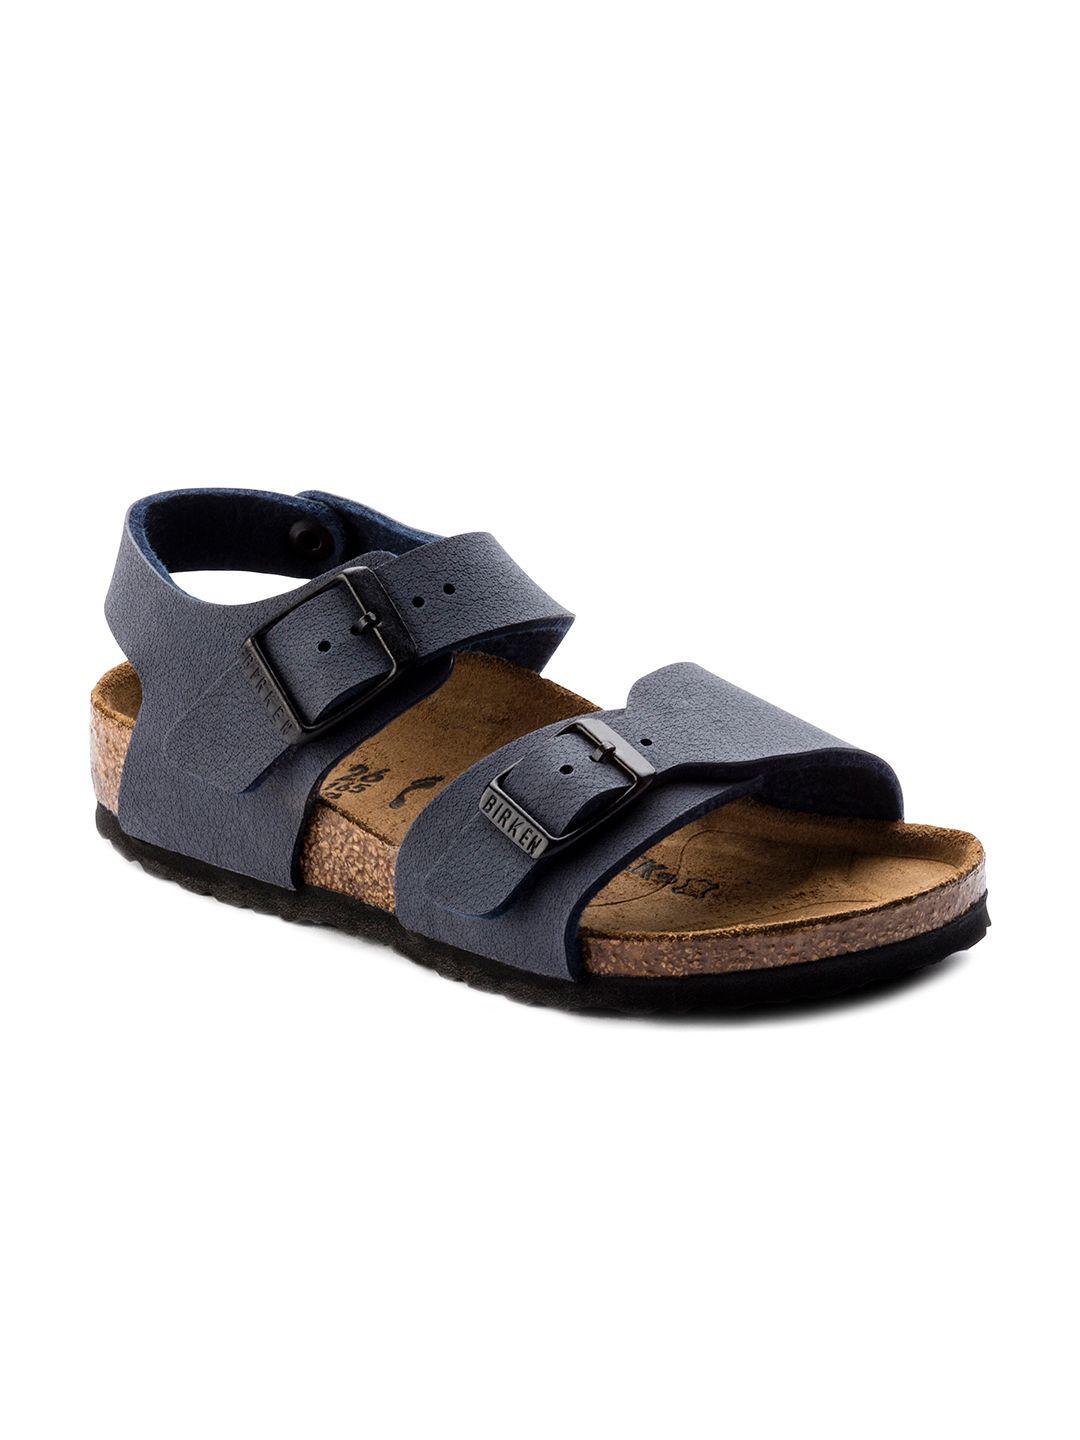 birkenstock boys navy blue new birko-flor nubuck narrow width new york comfort sandals